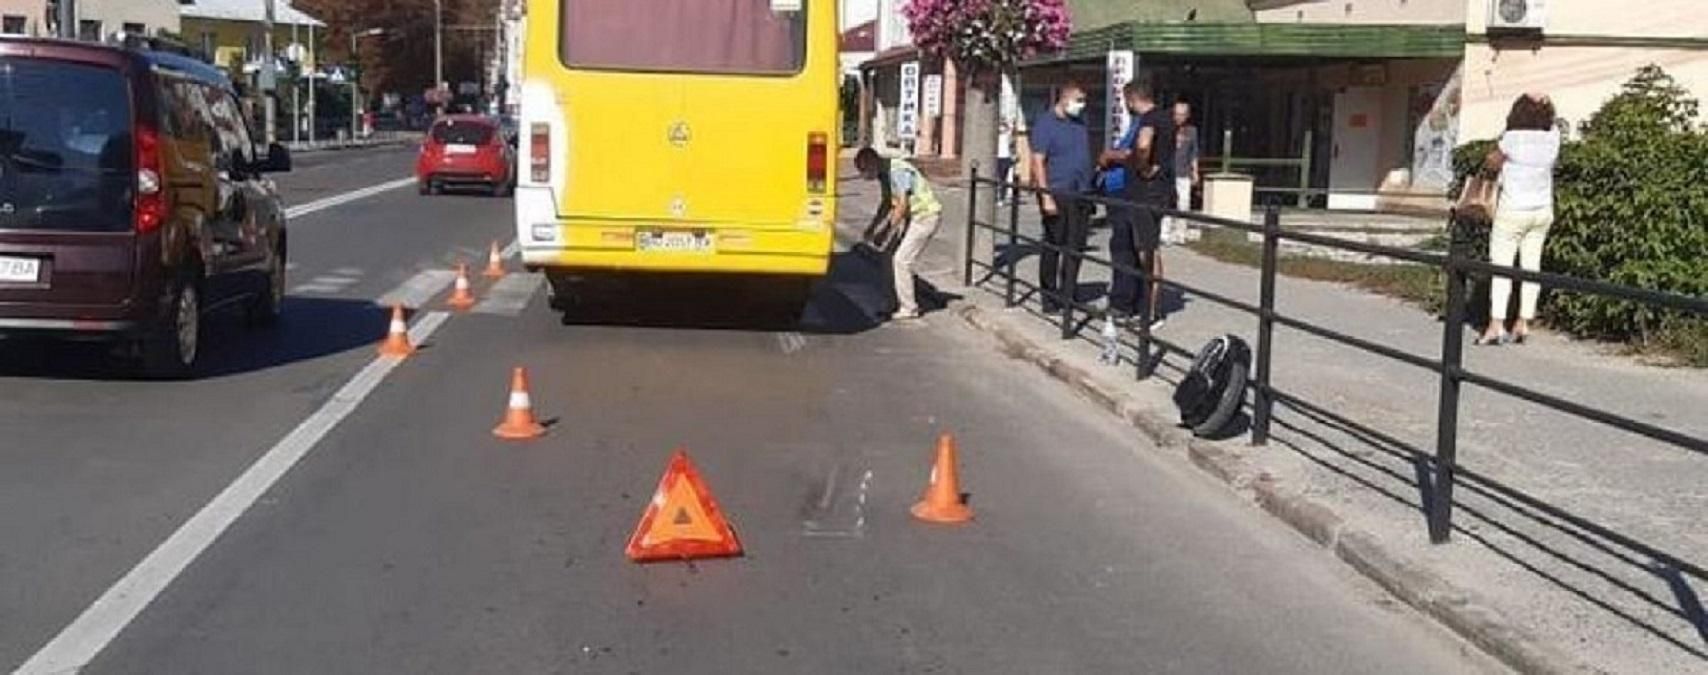 ДТП в Тернополе 10.09.2020 - маршрутка сбила мужчину на моноколеси